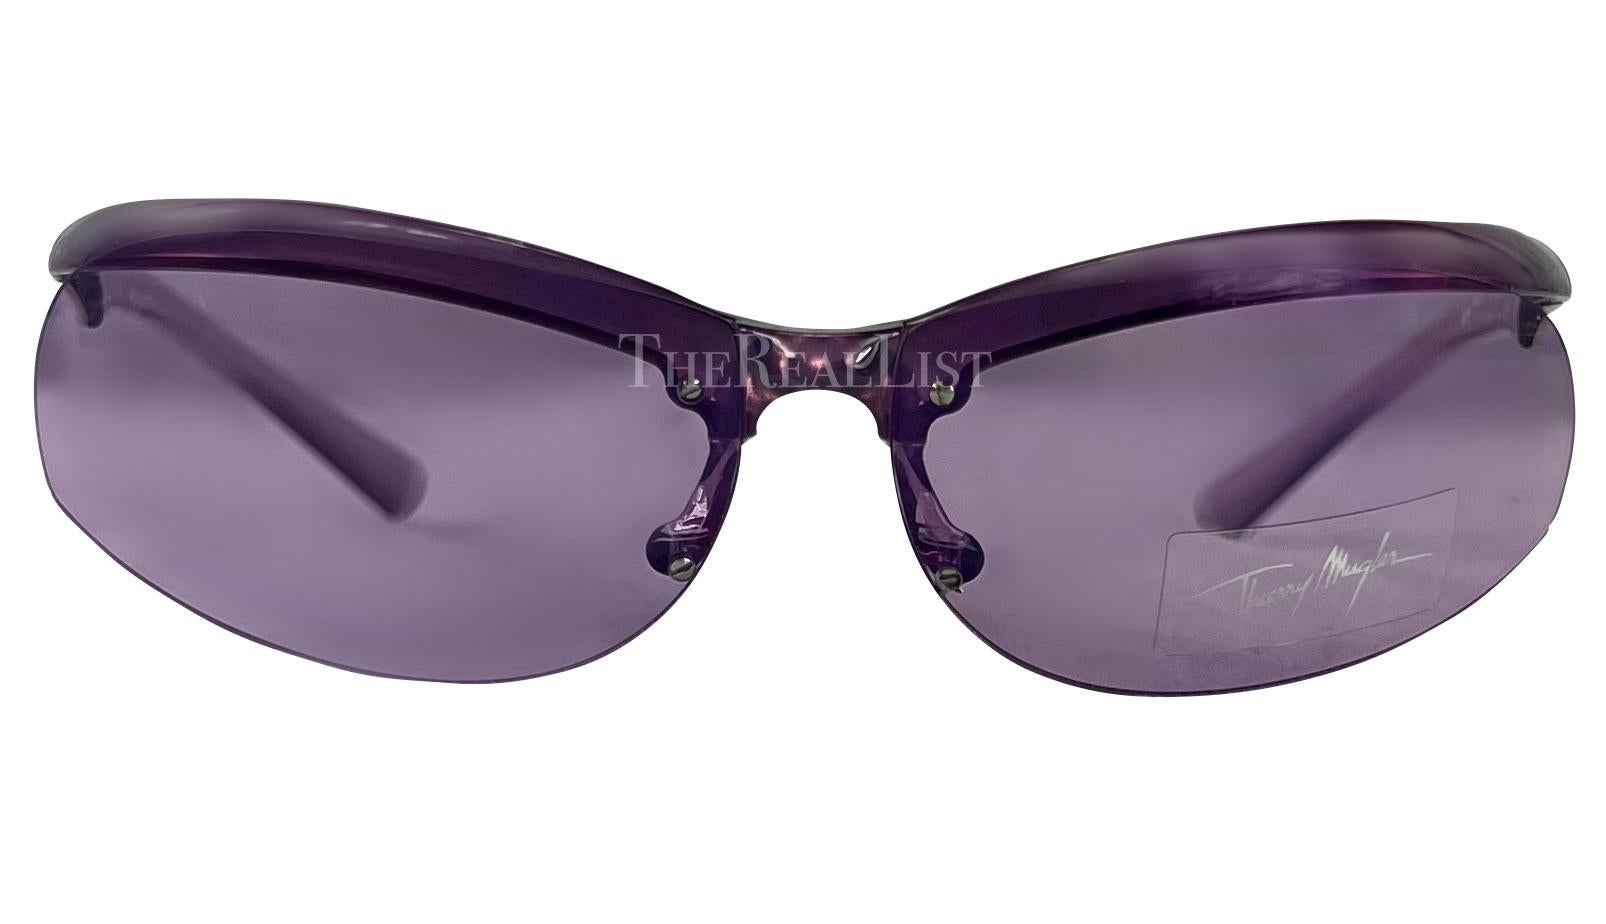 Voici une paire de lunettes de soleil Thierry Mugler d'un violet incroyable, conçue par Manfred Mugler. Datant du début des années 2000, ces lunettes de soleil de style motard sportif sont dotées de branches transparentes violettes et de verres